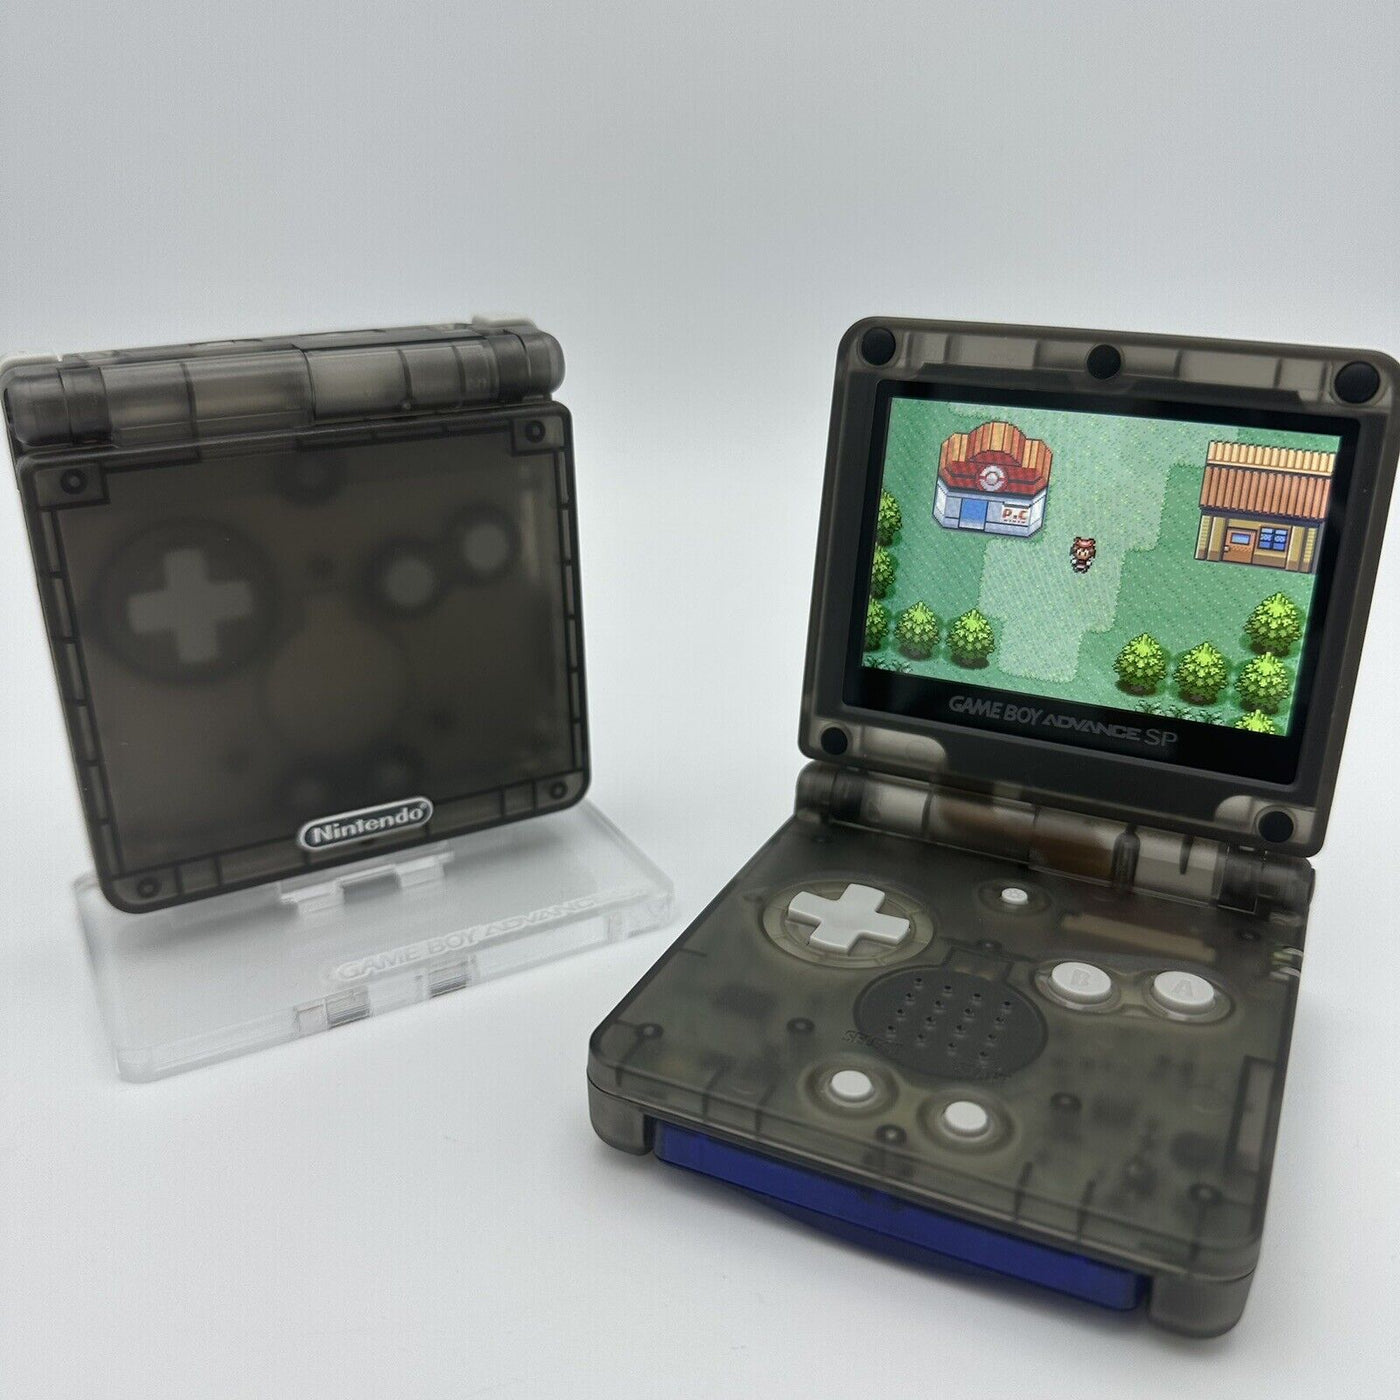 Game Boy Advance SP Console - Smoke Grey/Black